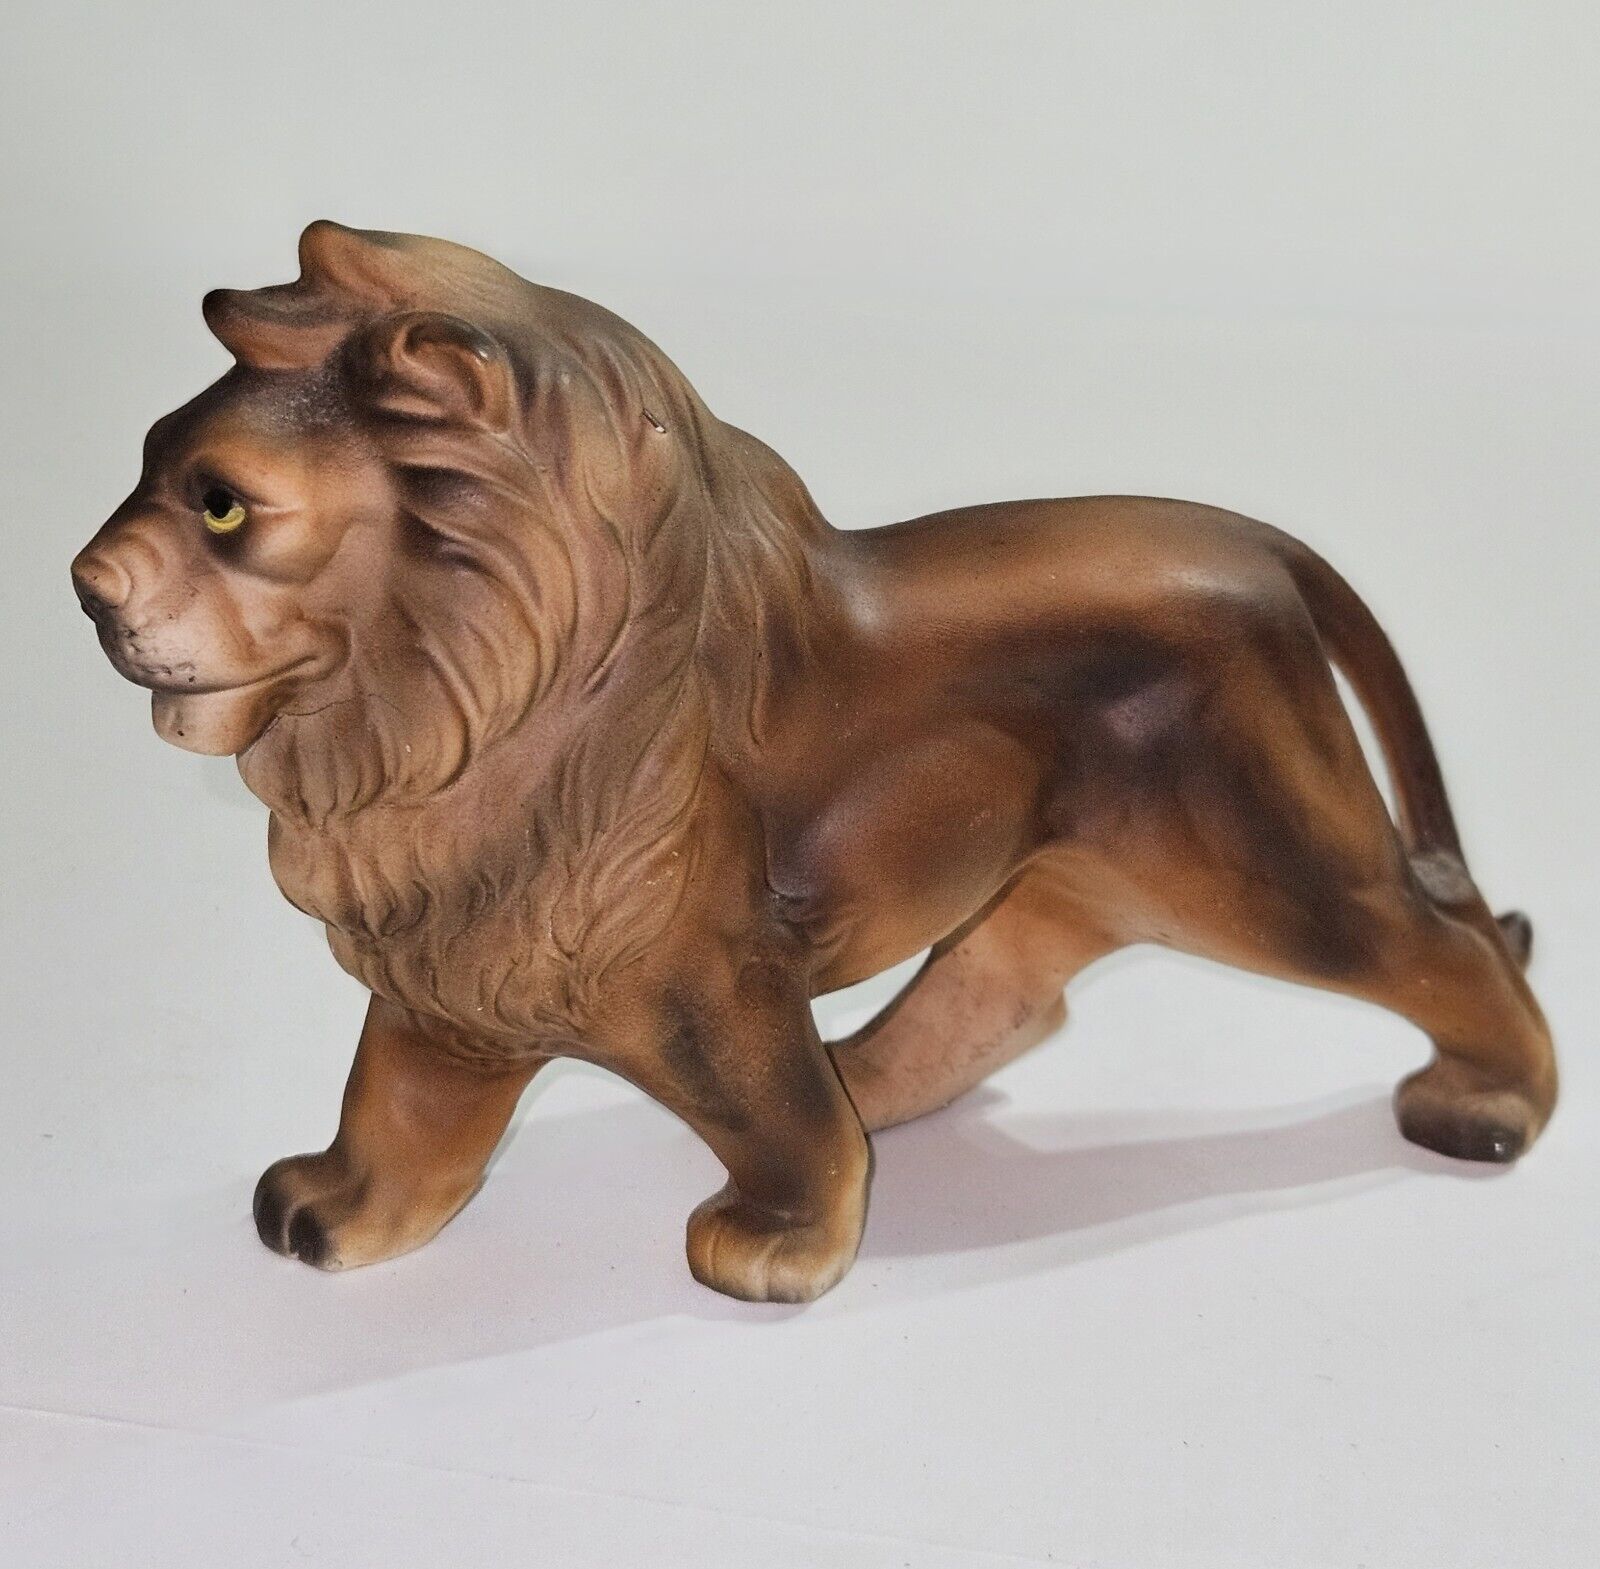 VTG Ceramic Lion Figure Figurine Vintage Statue - Made in Japan - 8\